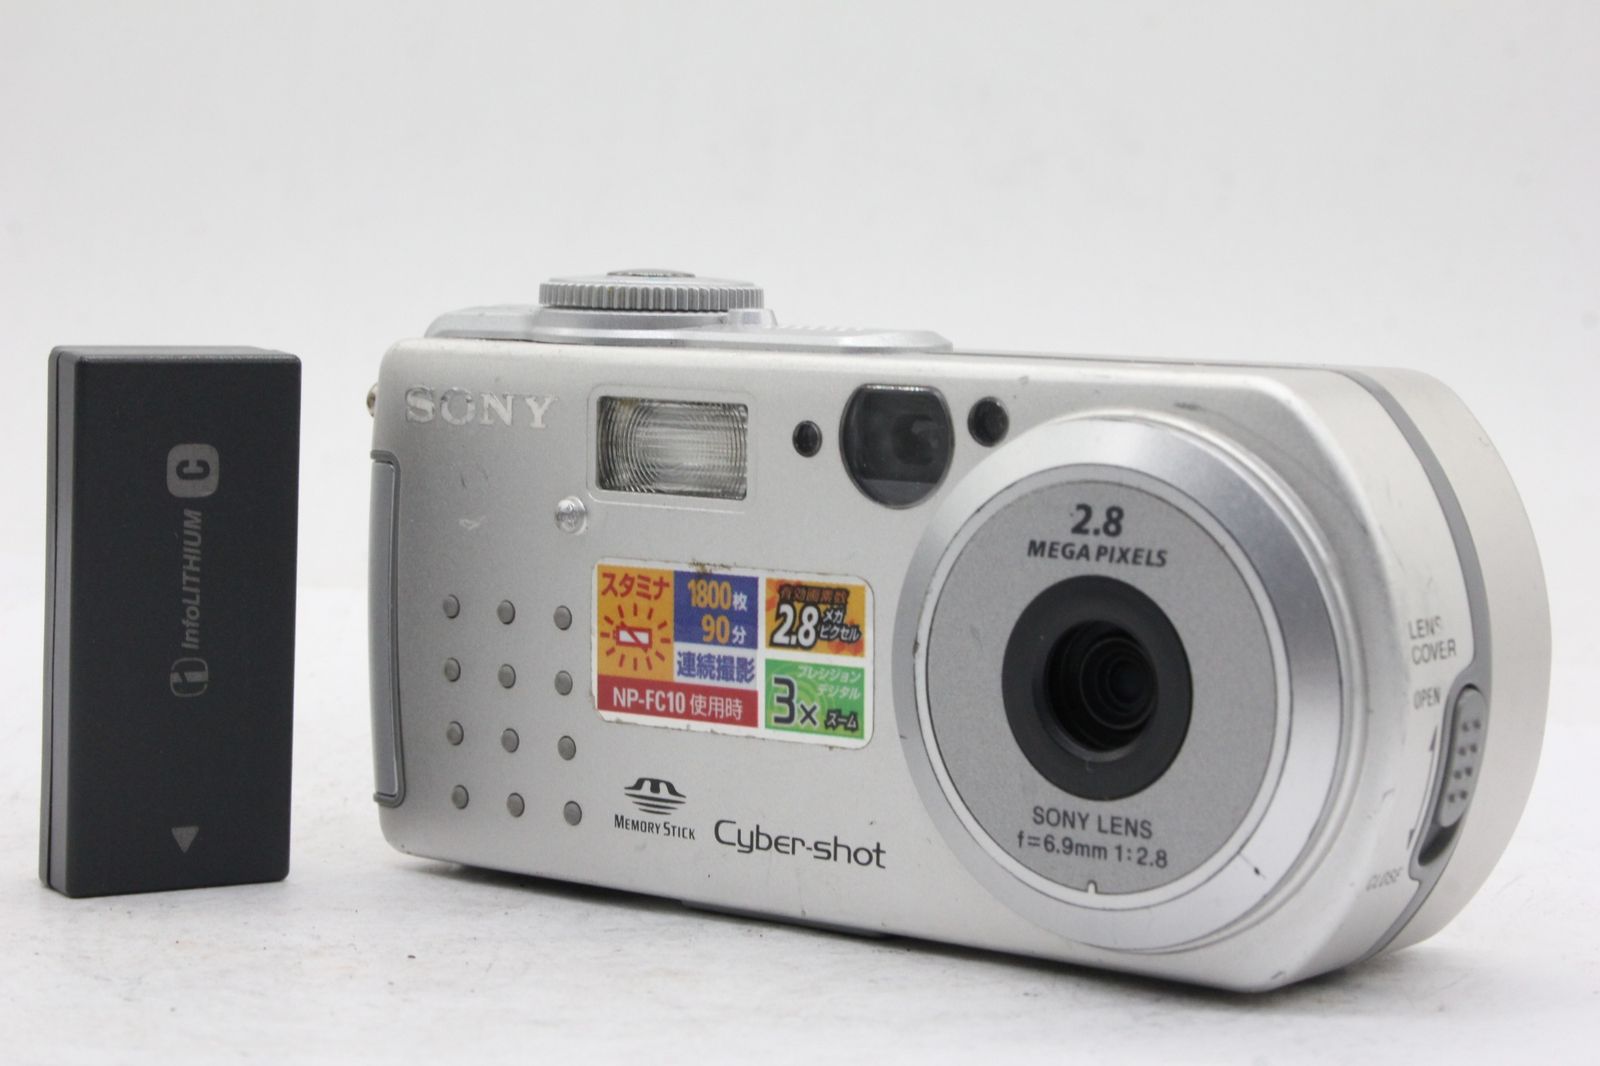 SONY 【返品保証】 ソニー SONY Cyber-shot DSC-P3 6.9mm F2.8 バッテリー付き コンパクトデジタルカメラ v1420